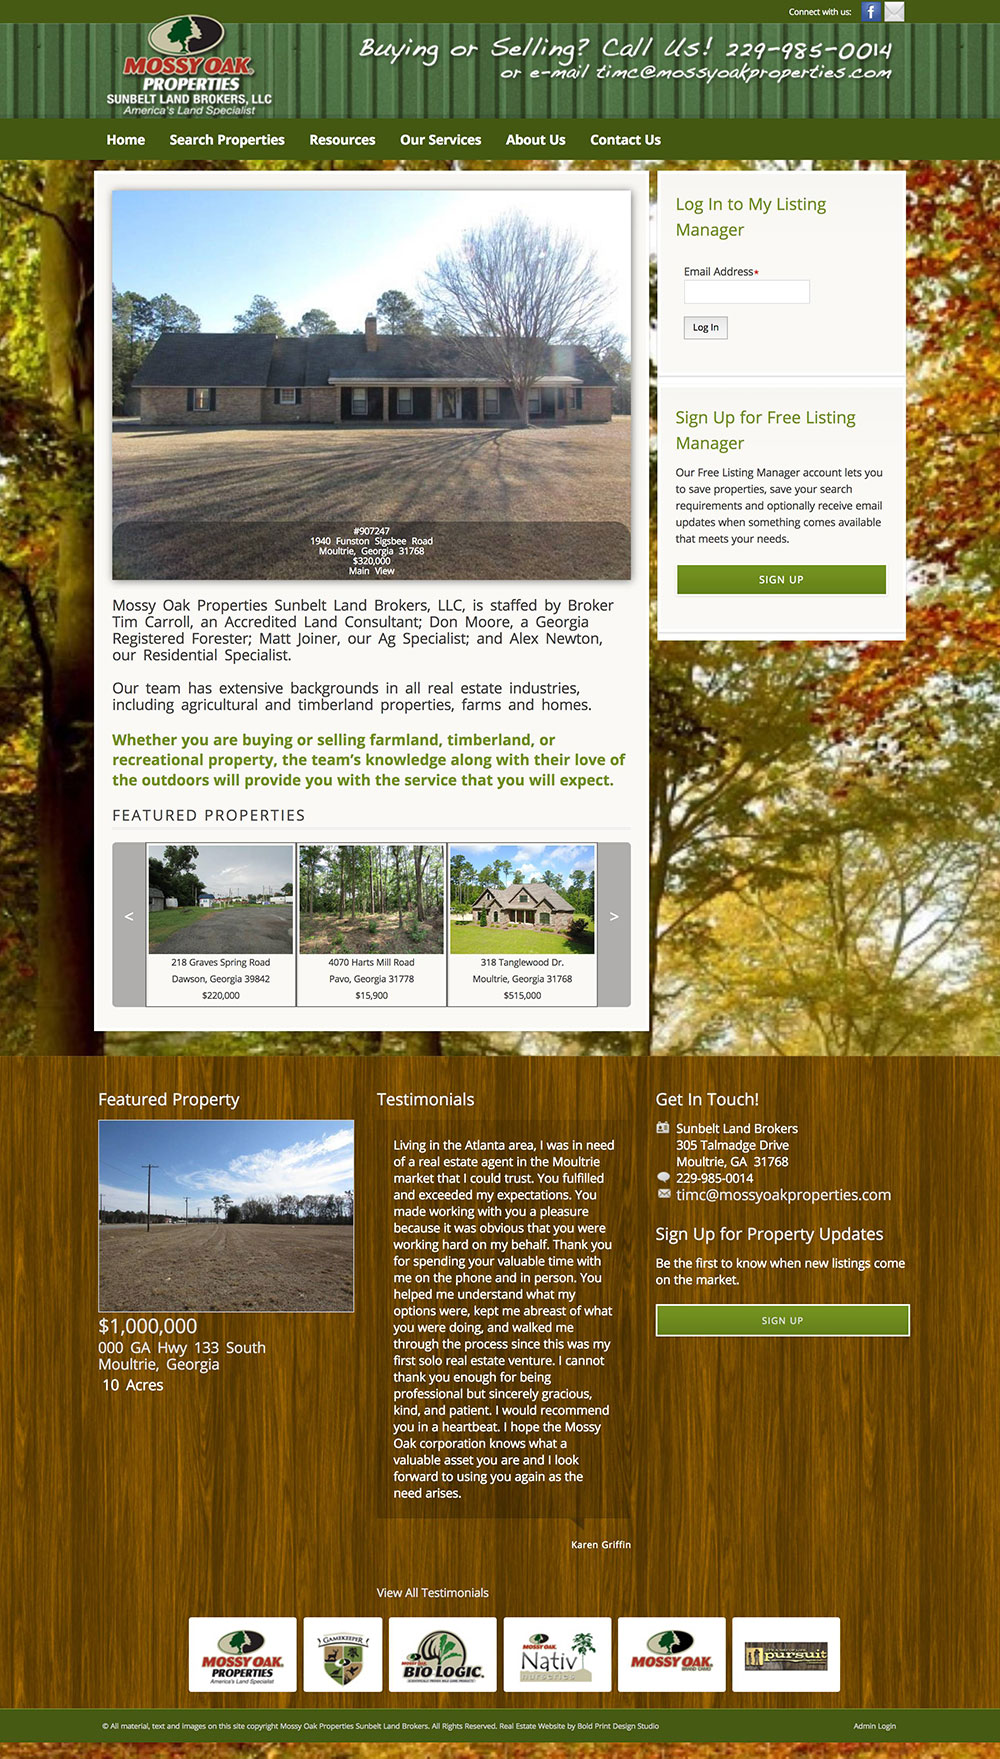 Mossy Oak Properties Sunbelt Land Brokers, LLC